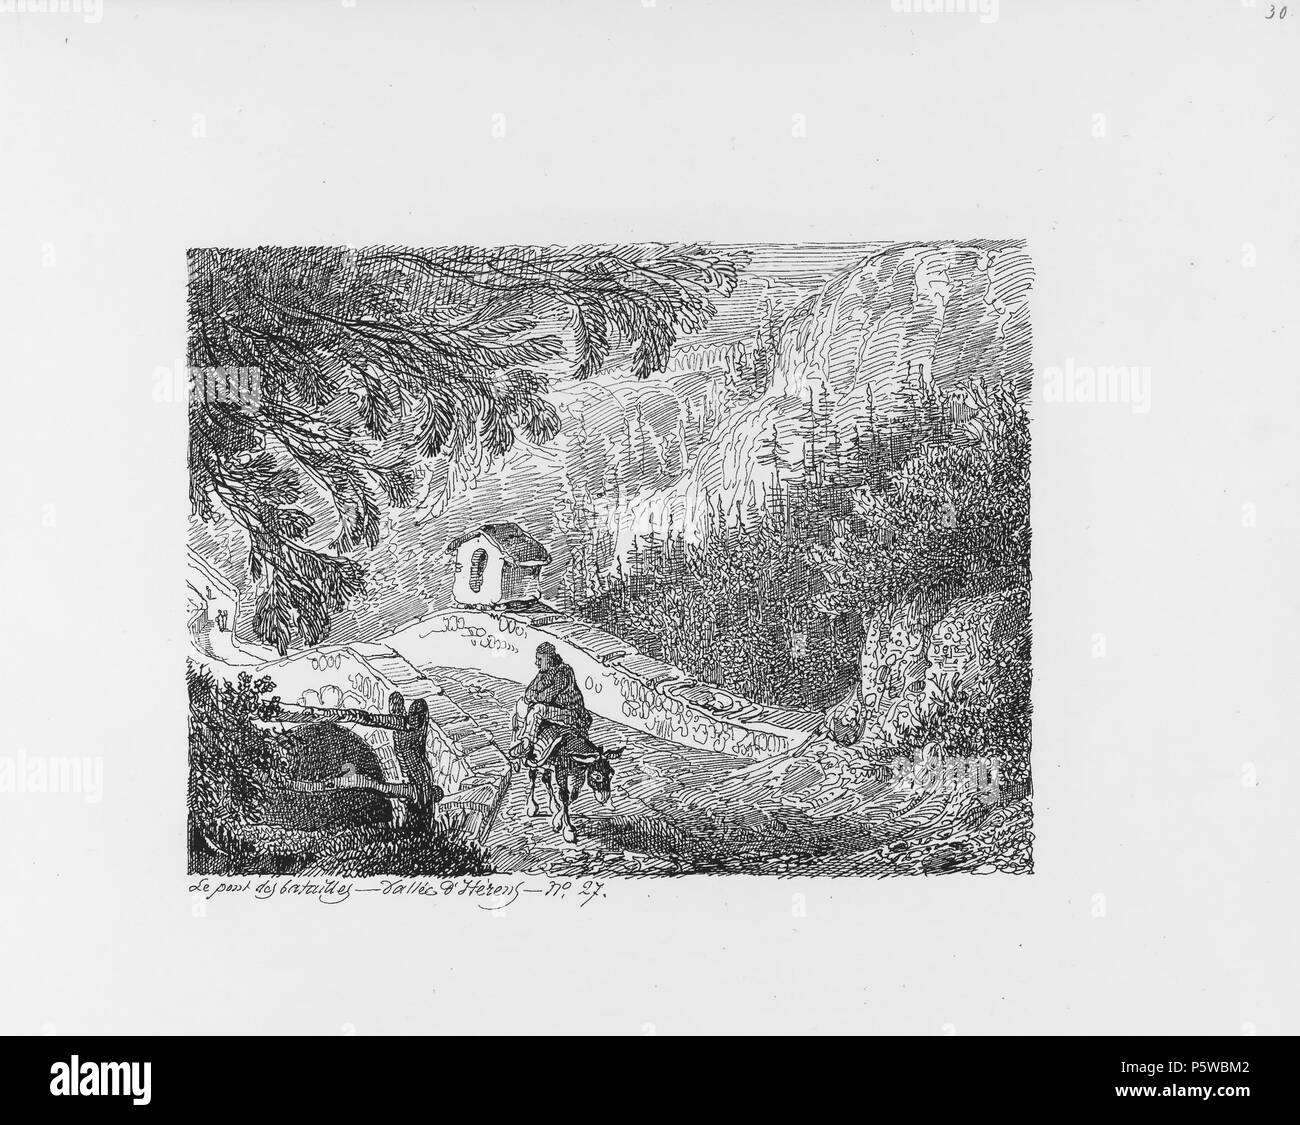 322 CH-NB-Voyage autour du Mont-Blanc dans les vallées d'Hérens de Zermatt et au Grimsel 1843-nbdig-19161-029 Stock Photo